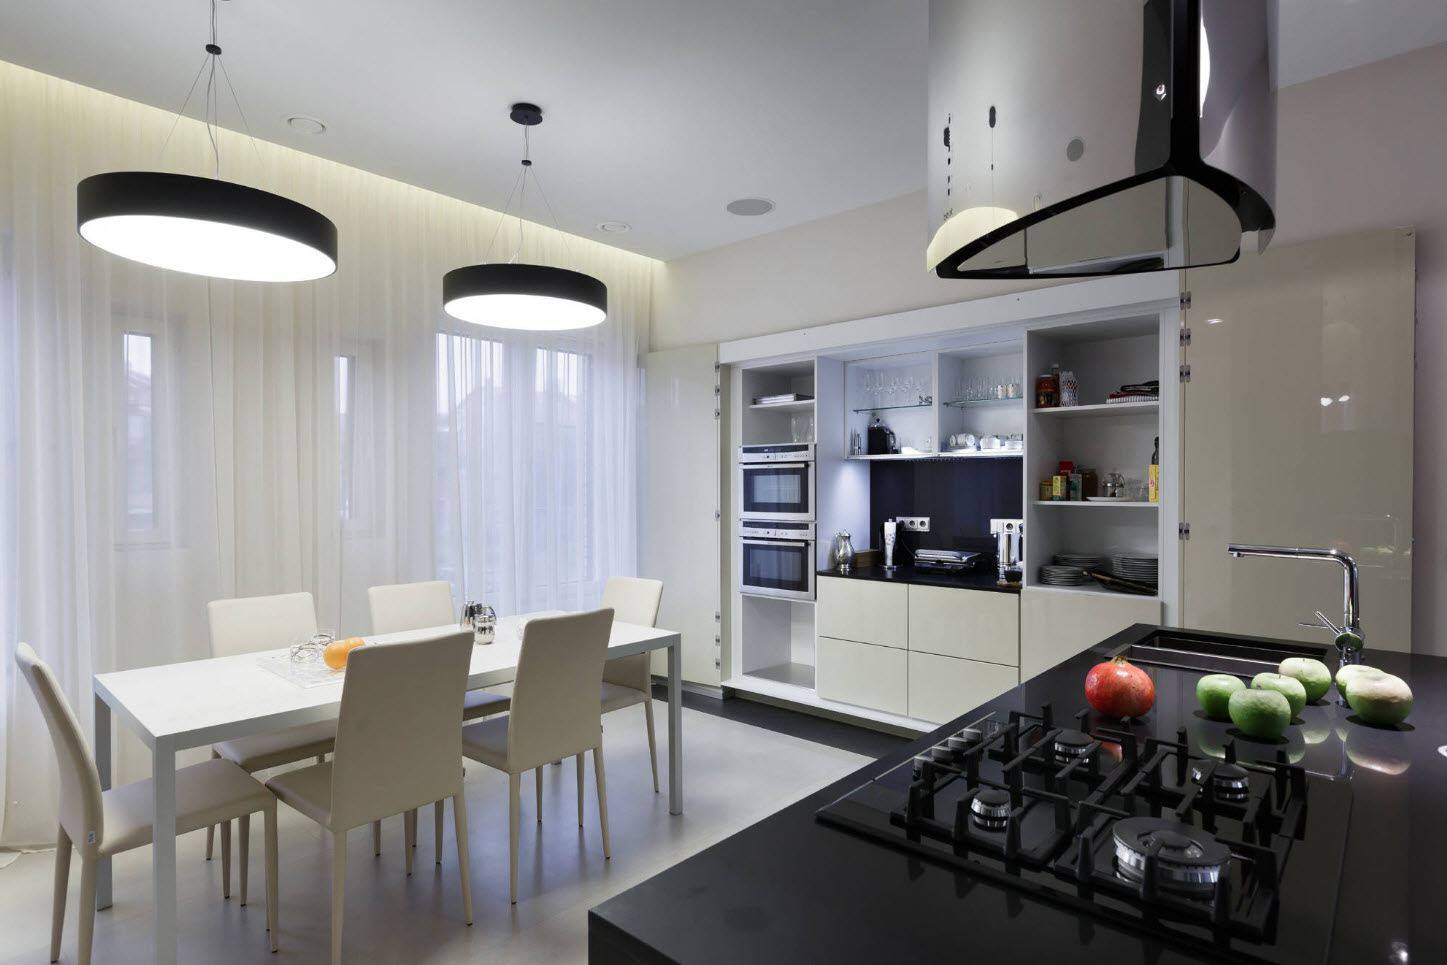 Современный дизайн кухни – фото интерьеров кухонь в современном стиле